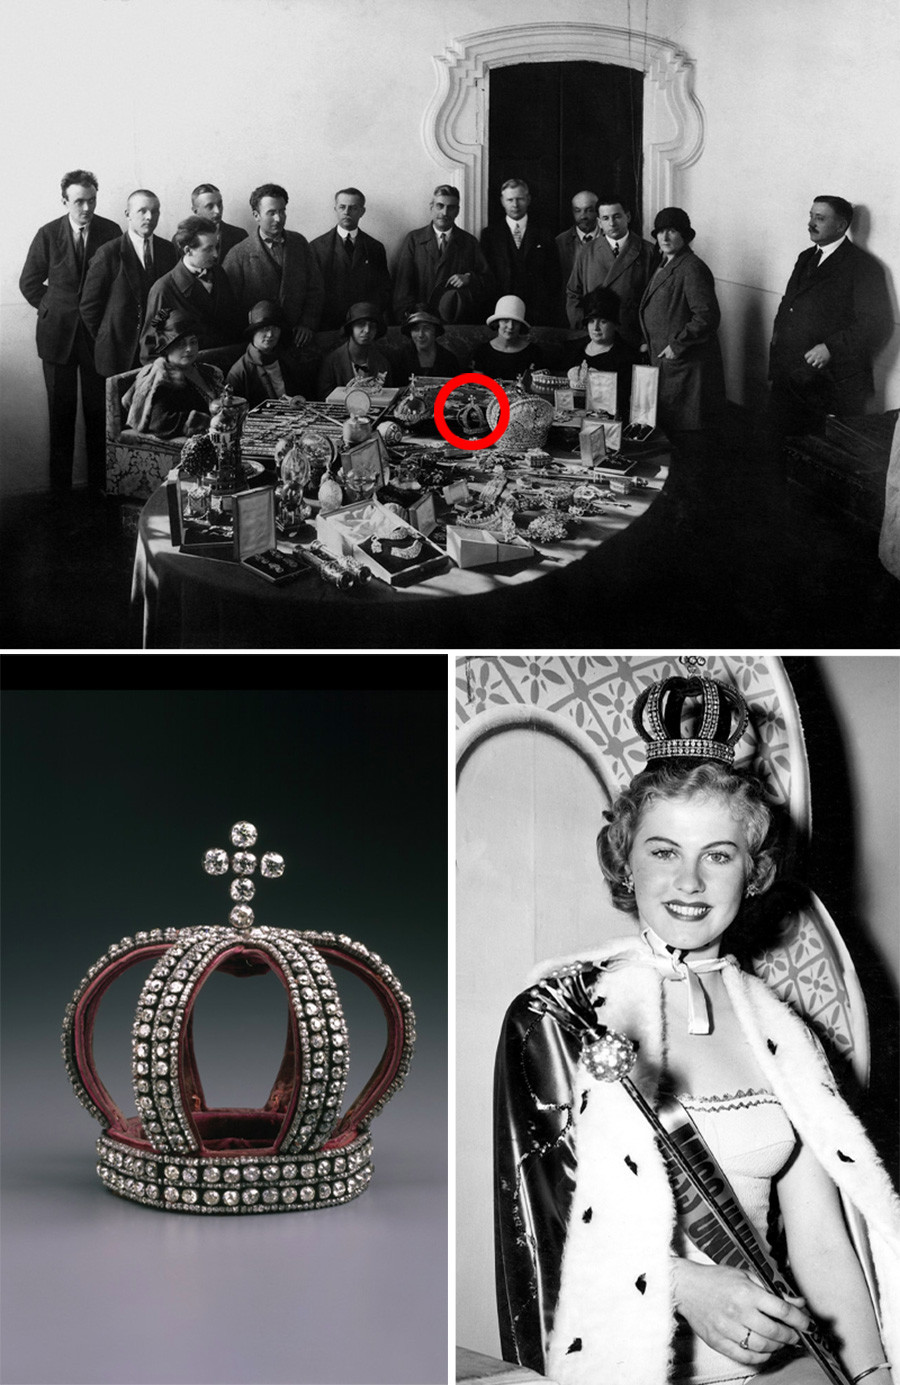 Эта корона была среди прочих драгоценностей, подготовленных для продажи на аукционах. В 1952 году она украсит голову победительницы конкурса красоты в Калифорнии.